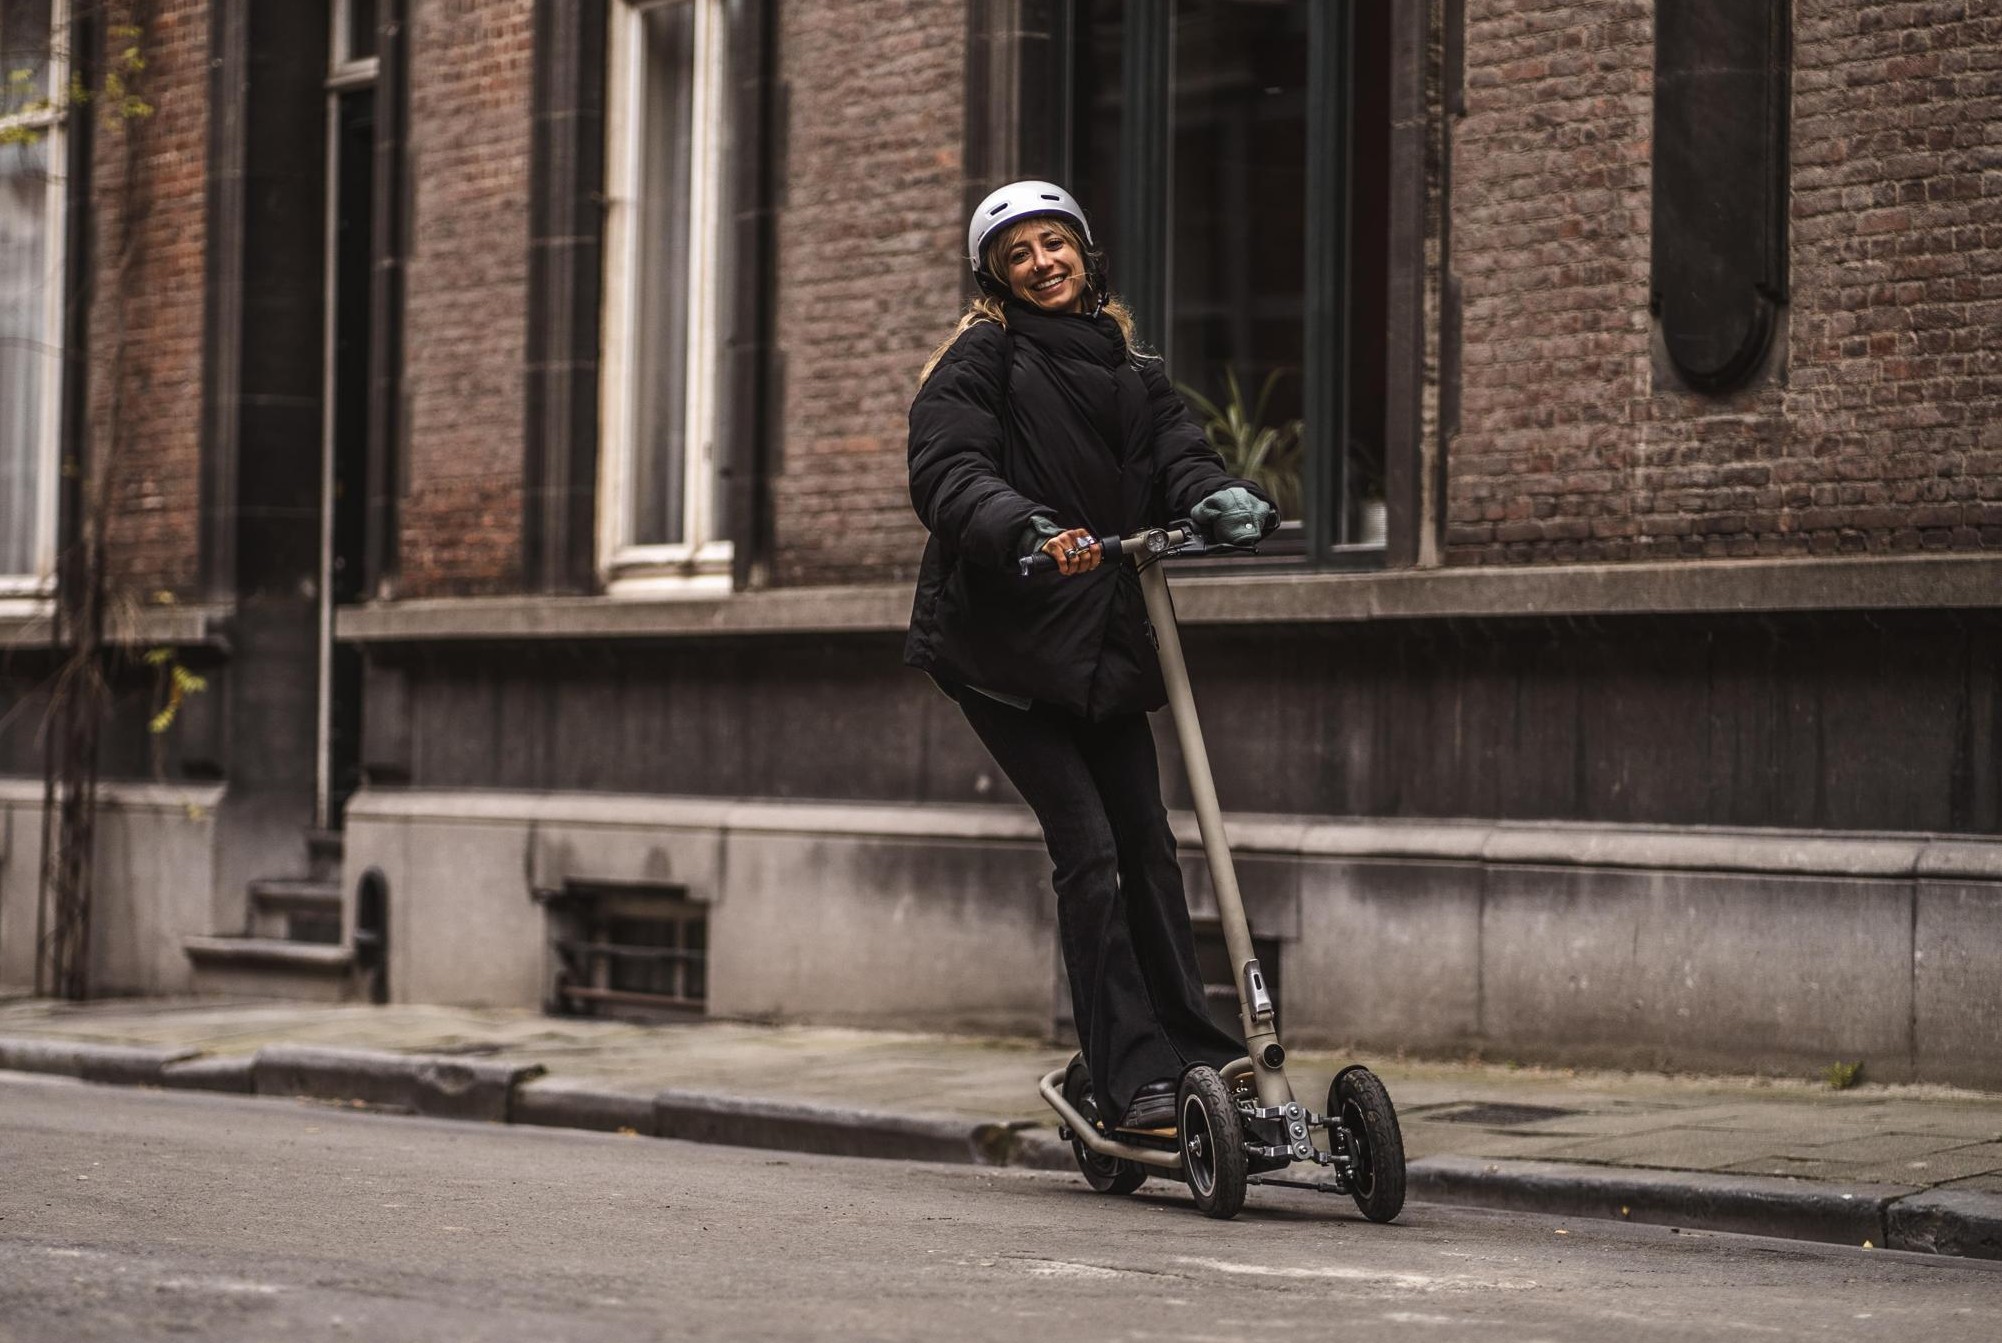 Broederschap invoer Nadruk Gentse e-step met drie wielen op komst: “Veiliger en duurzamer” (Gent) |  Het Nieuwsblad Mobile